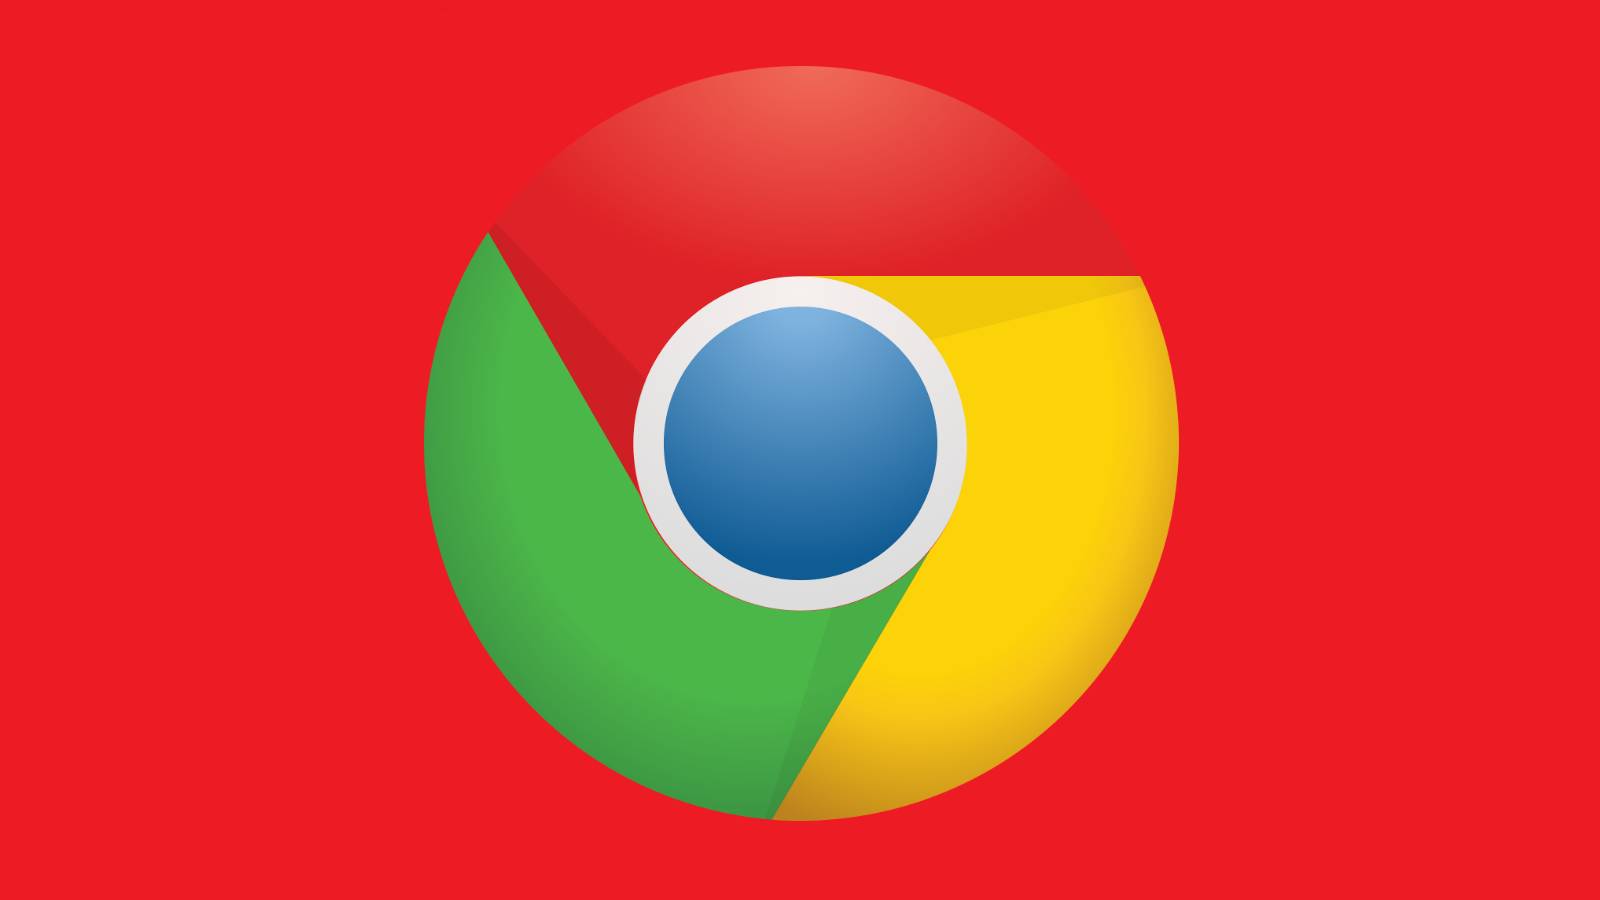 Google ENORME veranderingen Google Chrome wereldwijd